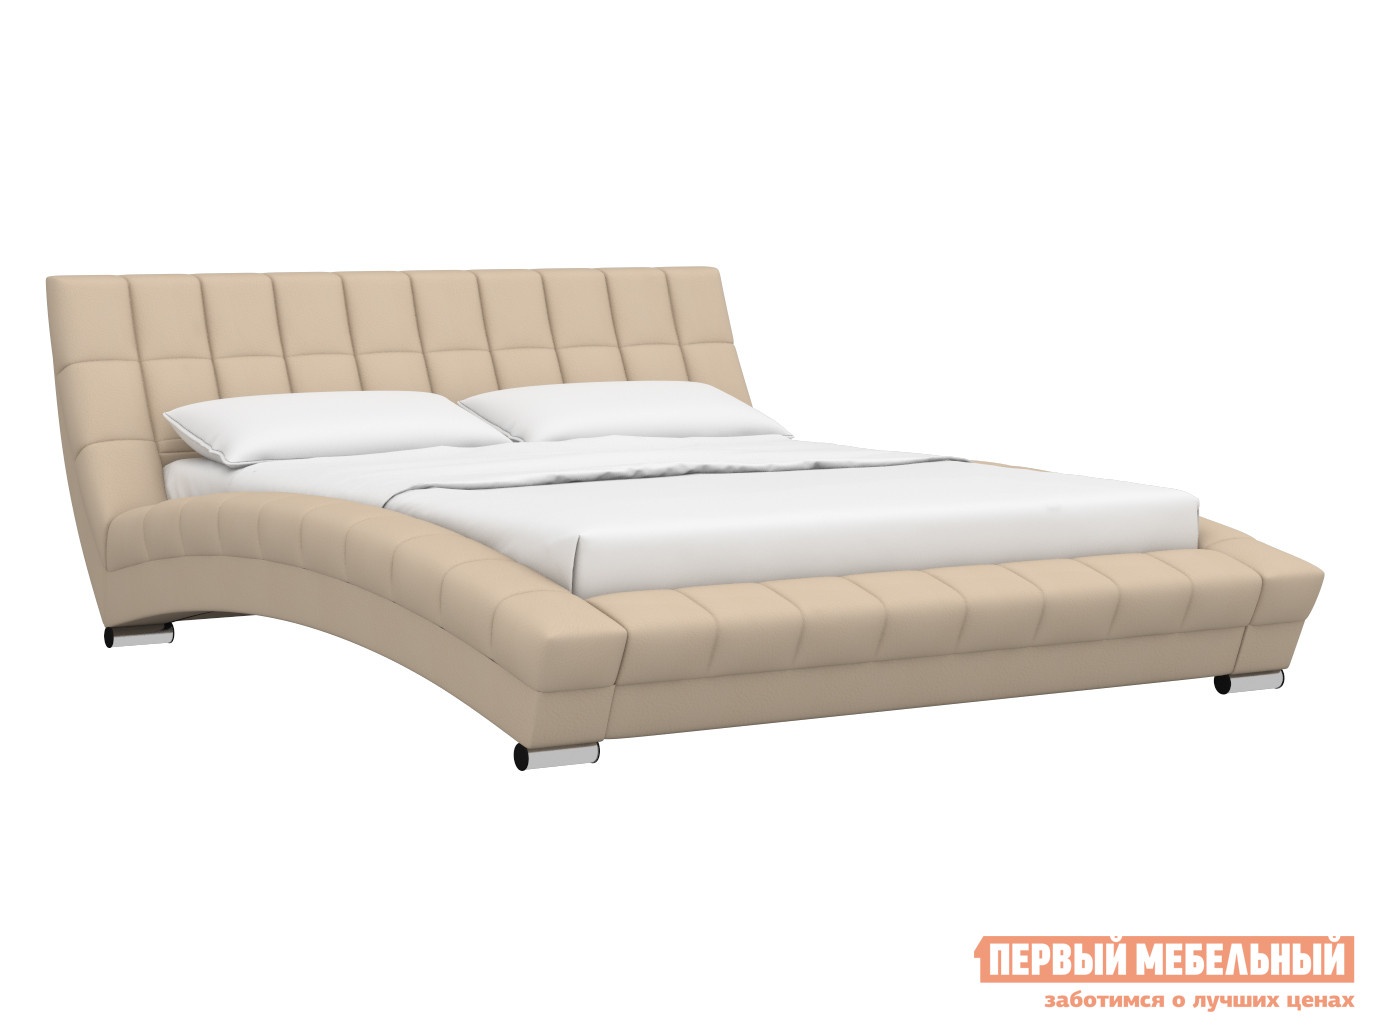 Двуспальная кровать кровать оливия бежевый, экокожа, 1600 х 2000 мм